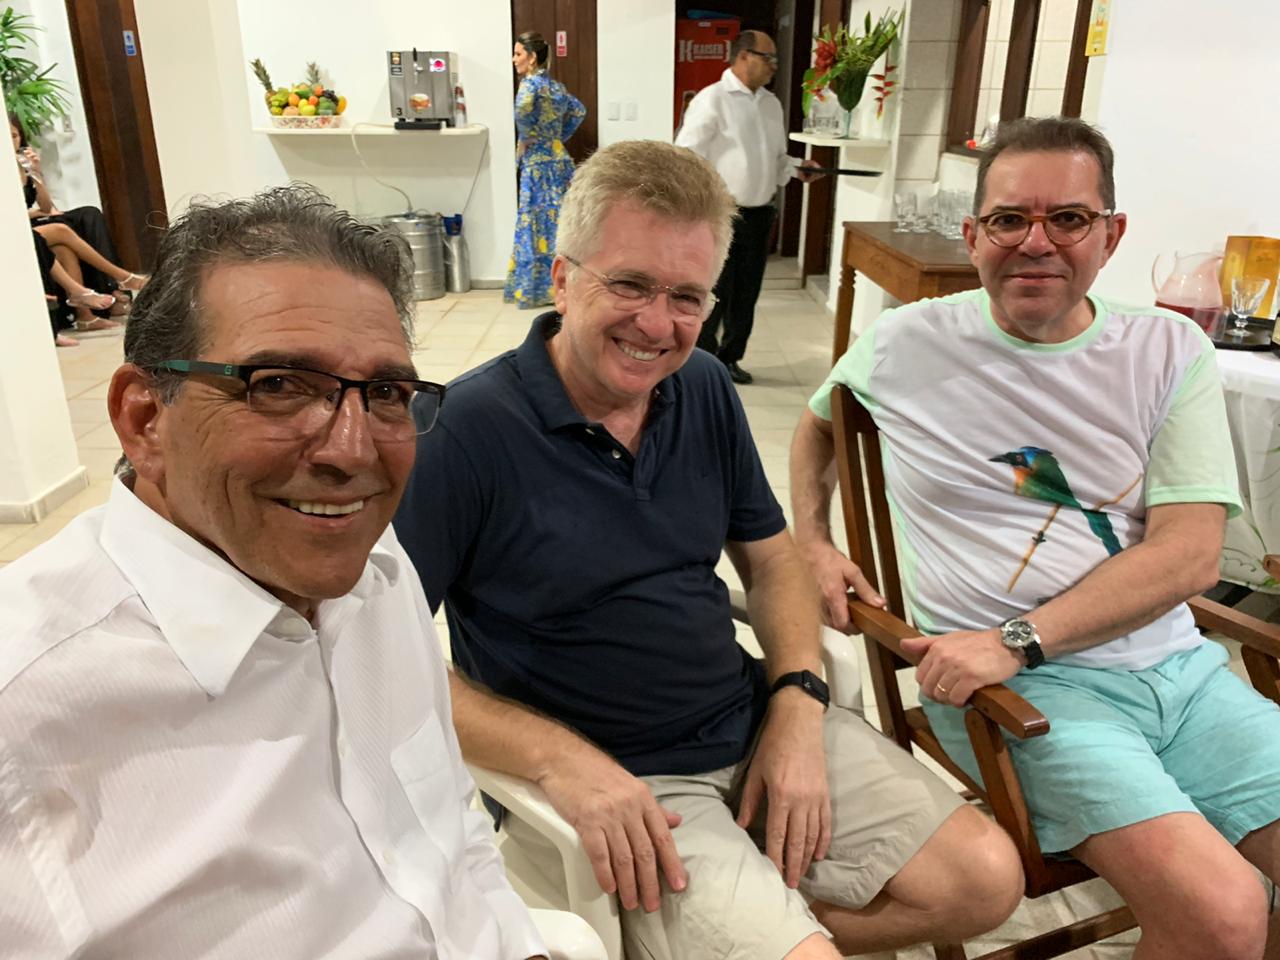 Pedro Cavalcanti e Ricardo Bittencourt em brindes para Marcelo Navarro Ribeiro Dantas